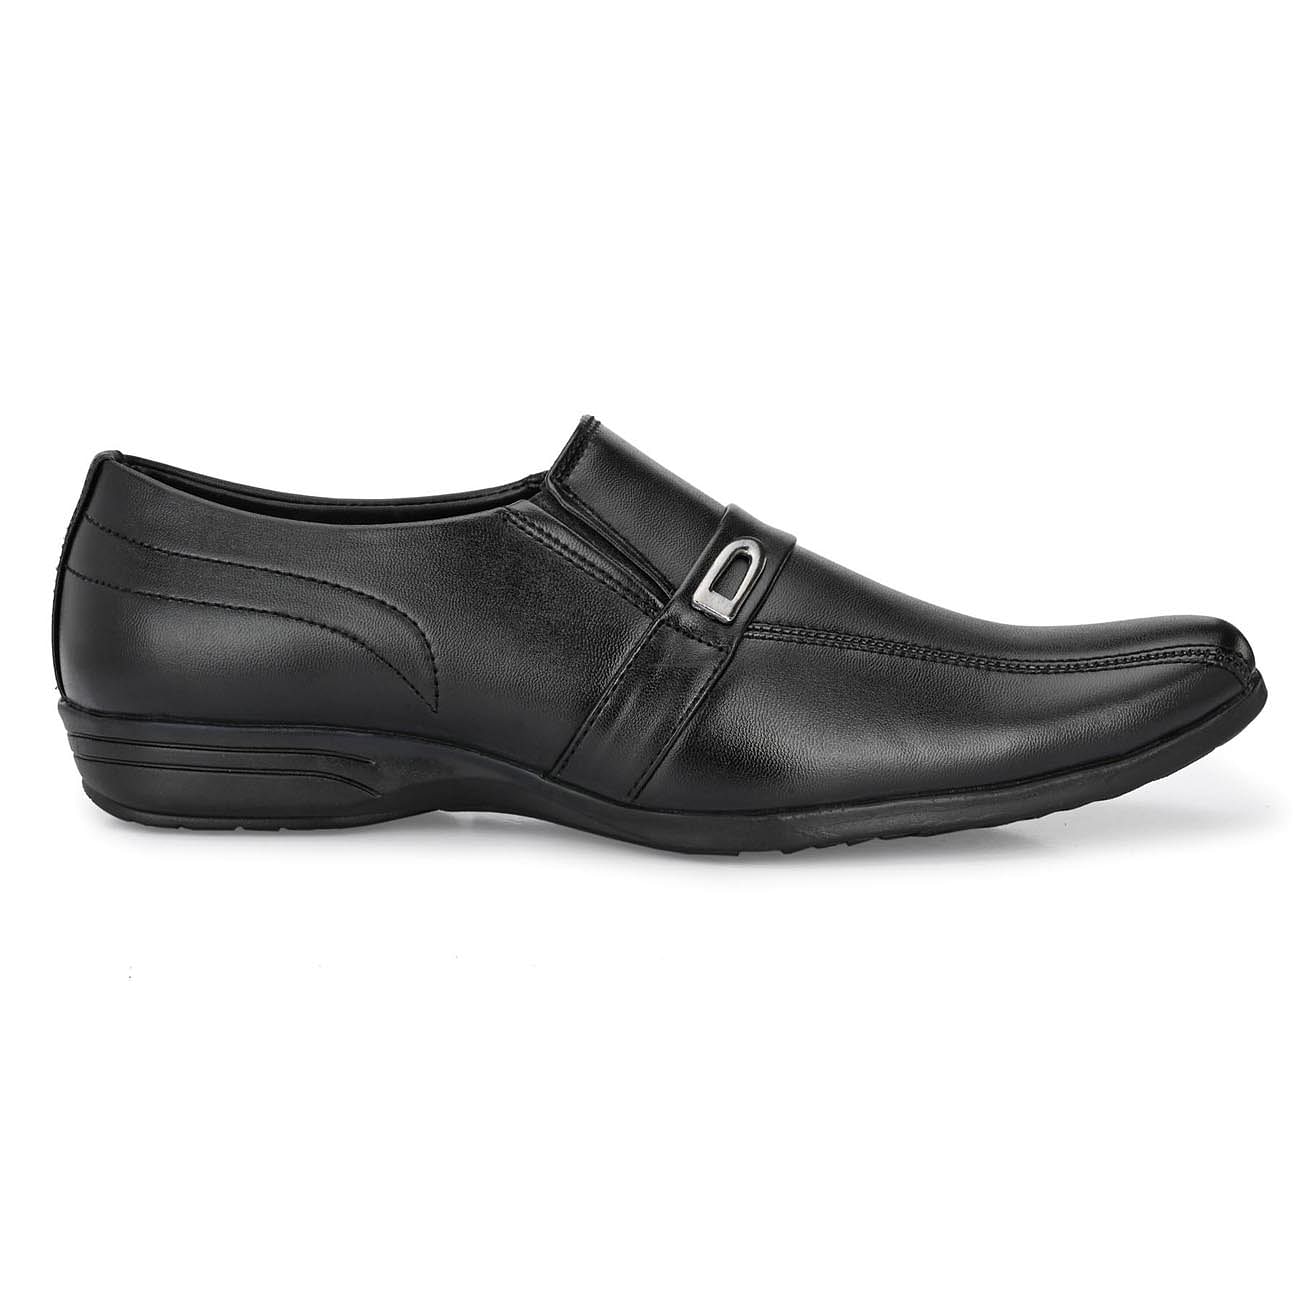 Pair-it Men moccasin Formal Shoes - Black- MN-RYDER202